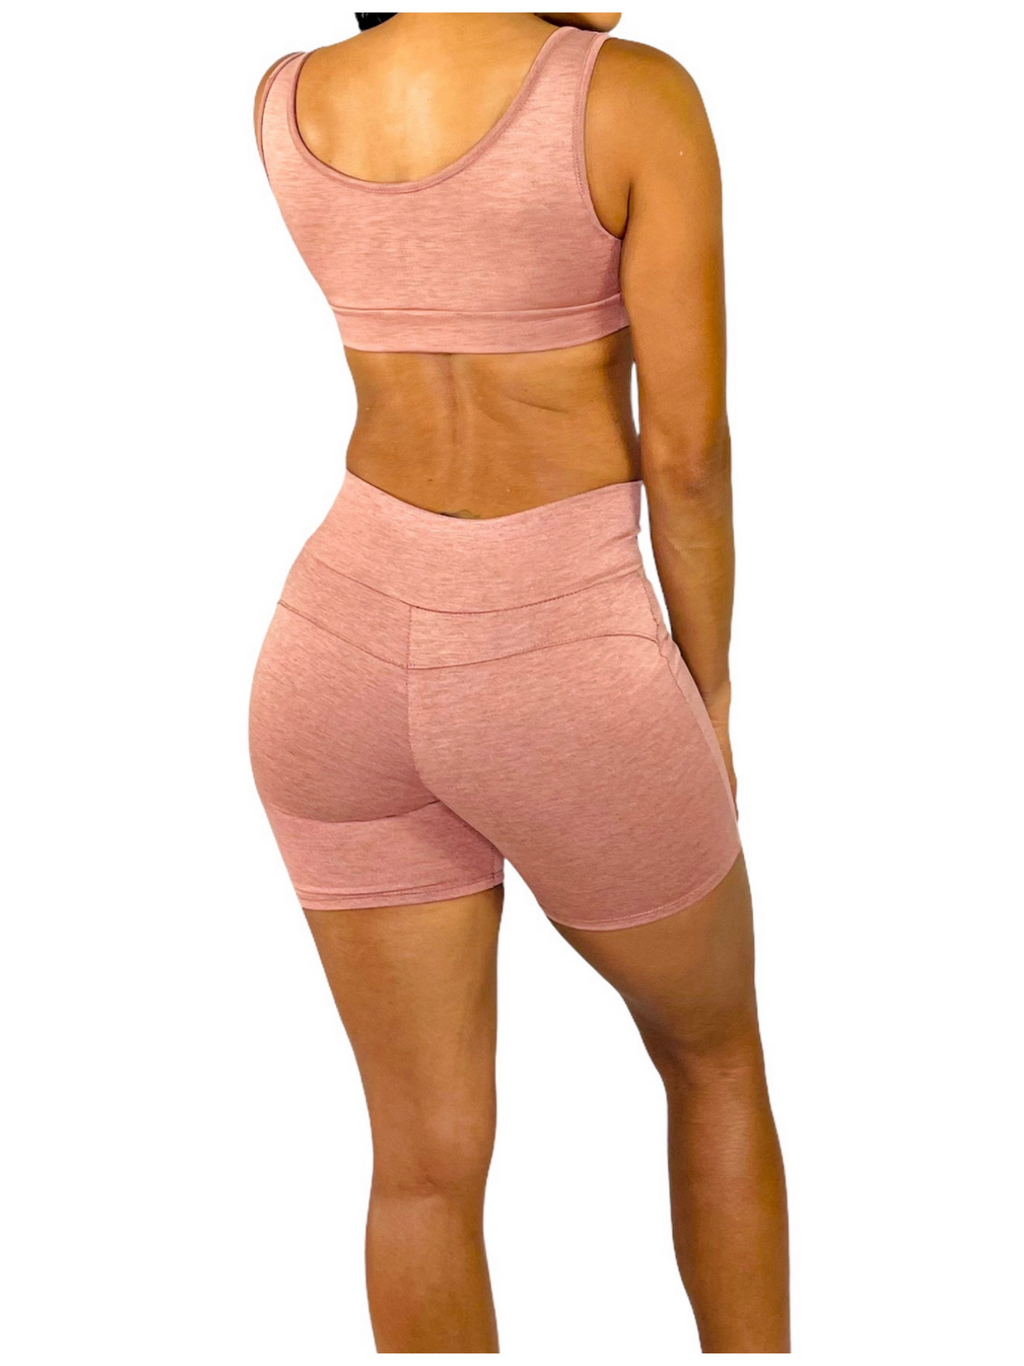 Sydney -Blush Pink Shorts TN-140